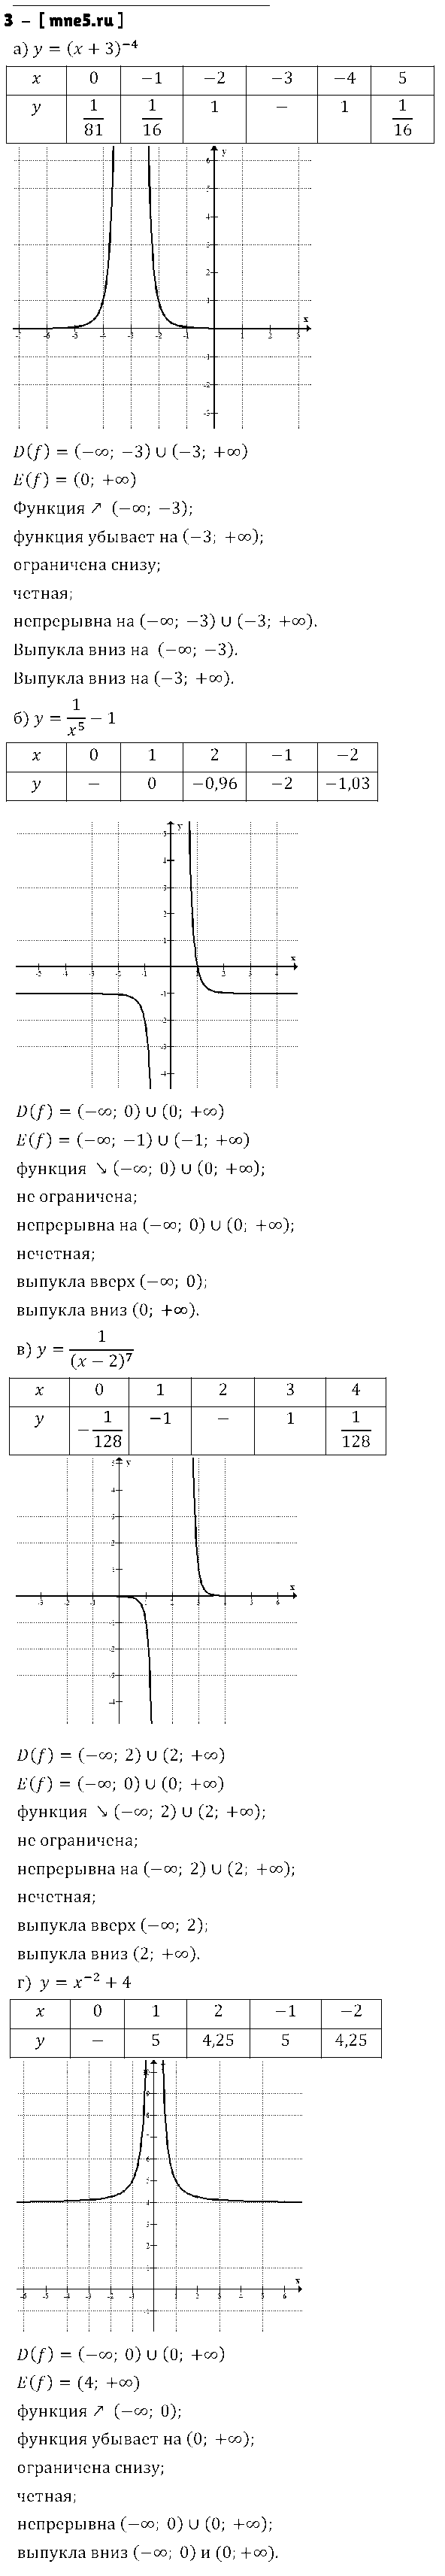 ГДЗ Алгебра 9 класс - 3